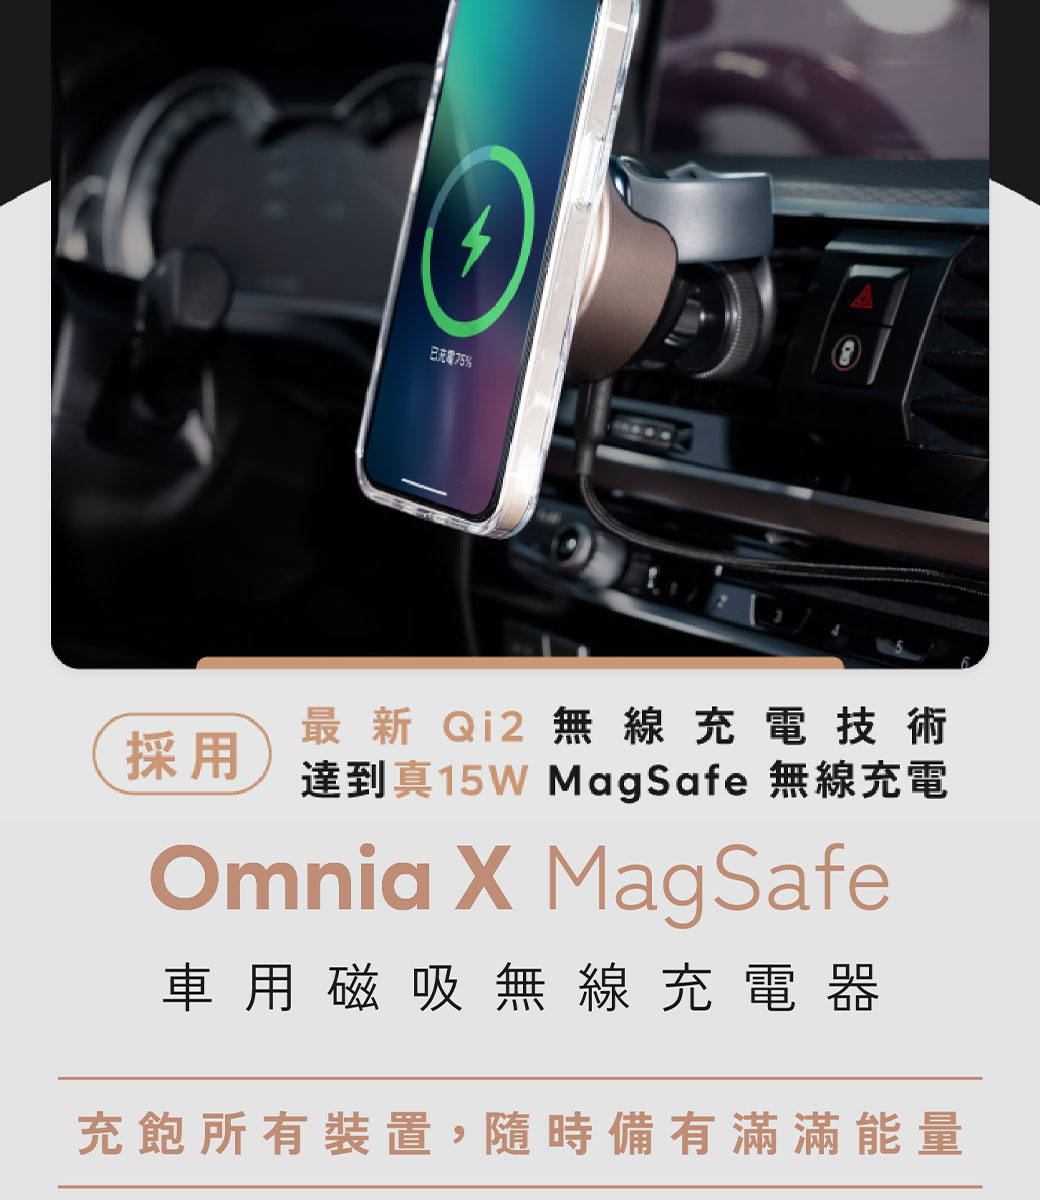 已充電75%採用最新 Qi無線充電技術達到真 MagSafe 無線充電Omnia  MagSafe車用磁吸無線充電器充飽所有裝置,隨時備有滿滿能量